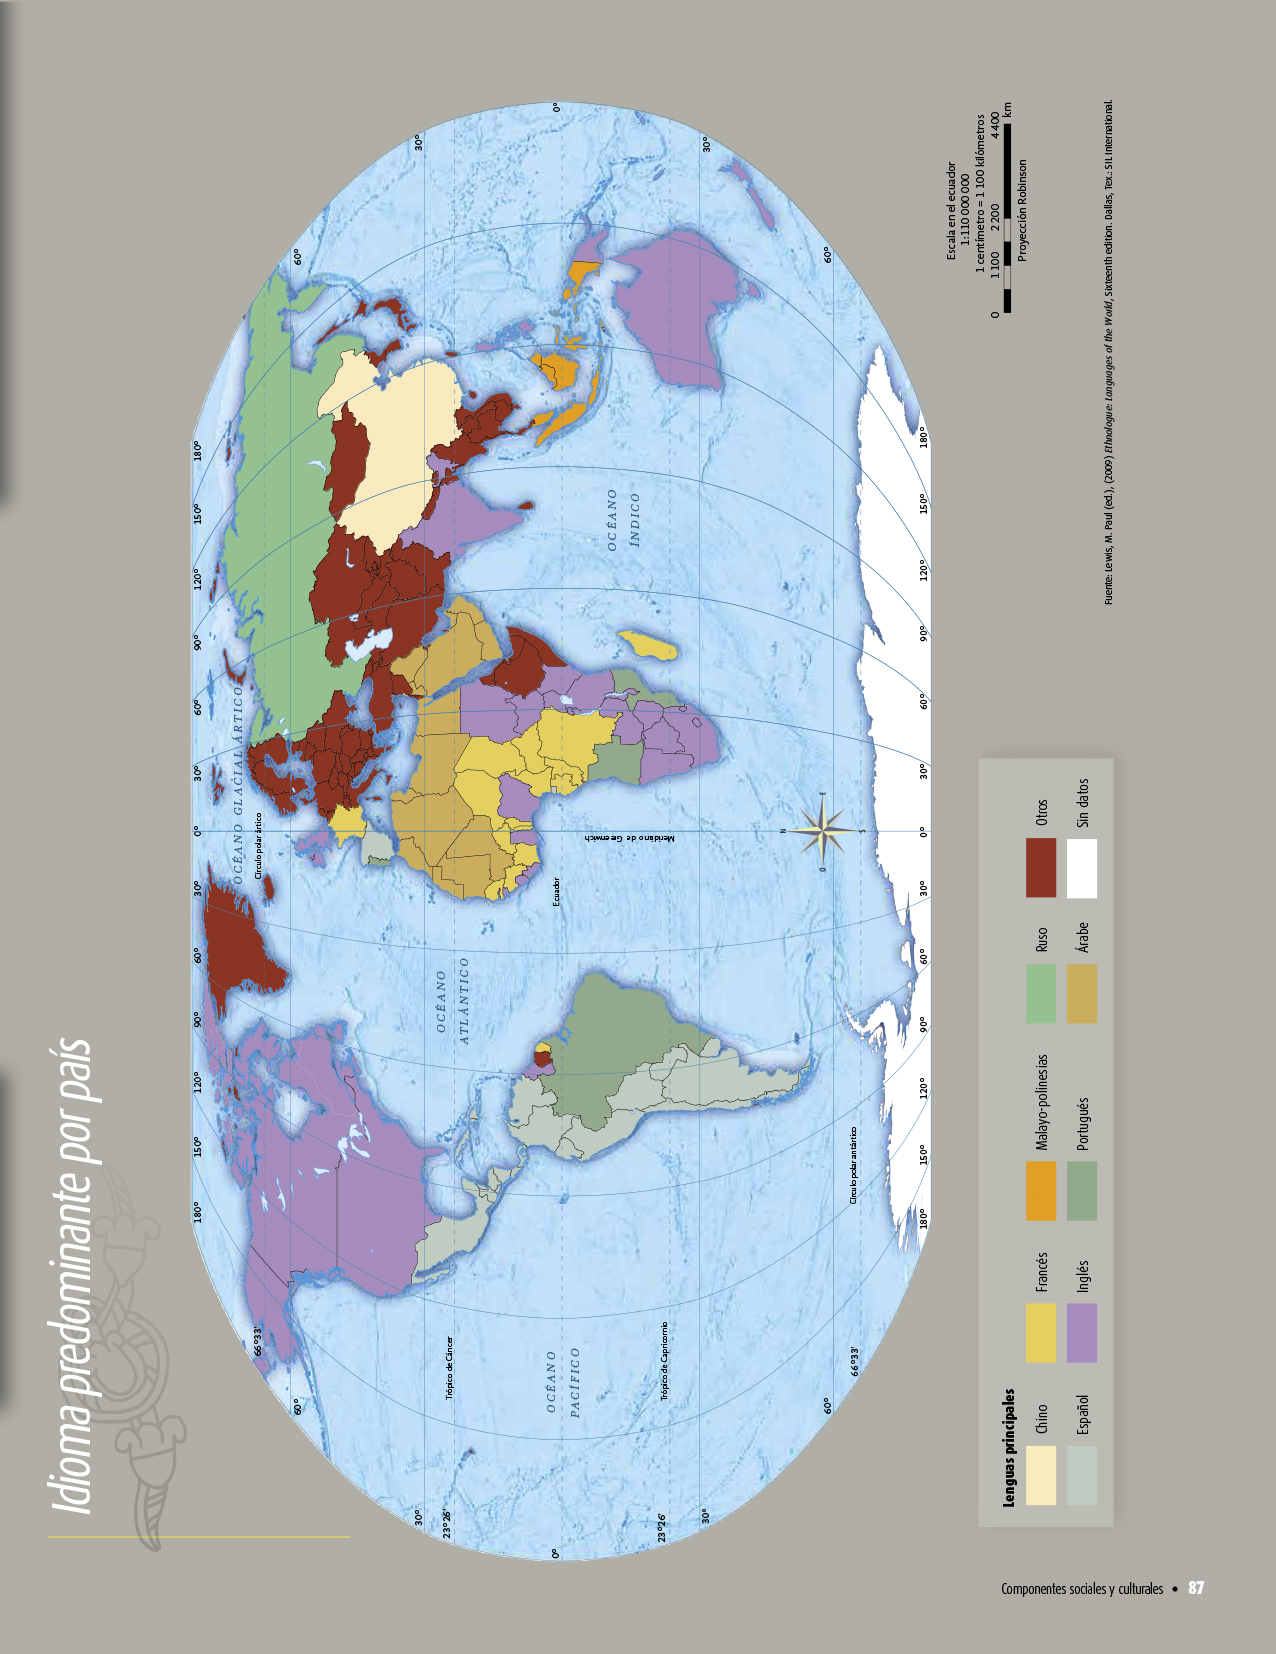 Atlas de geografía del mundo quinto grado 2017-2018 - Página 87 - Libros de Texto Online